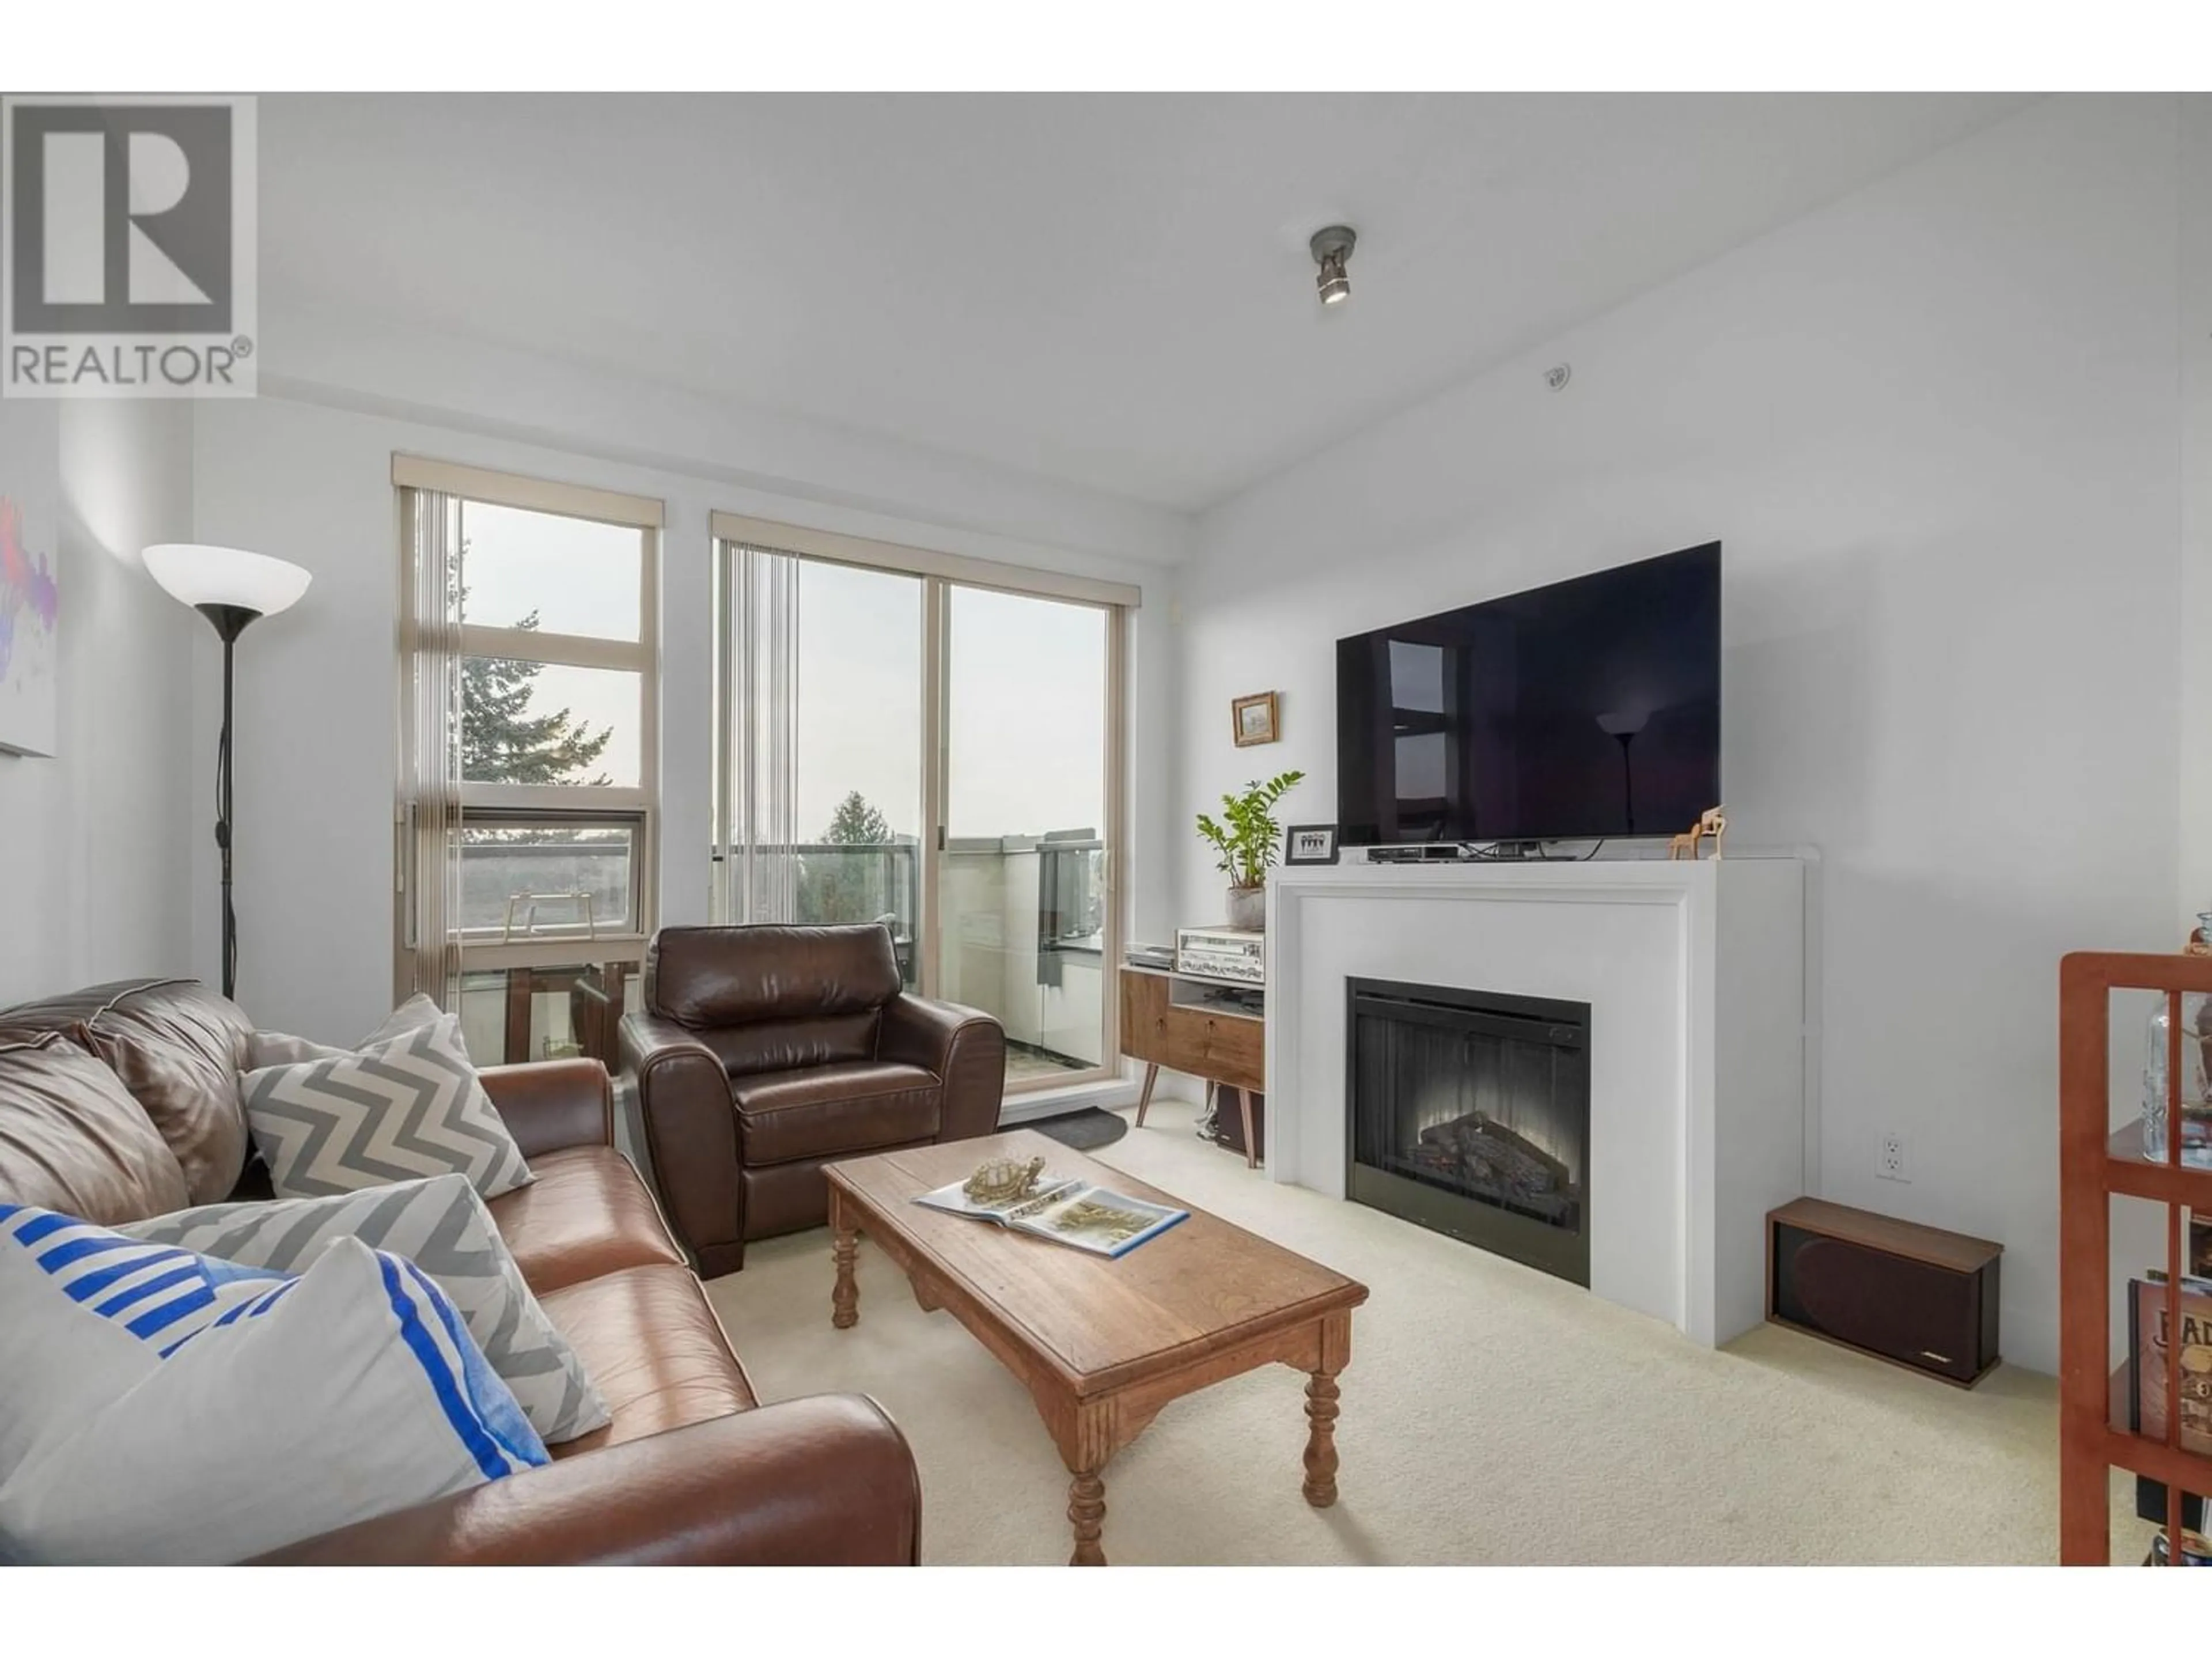 Living room for 405 4550 FRASER STREET, Vancouver British Columbia V5V4G8